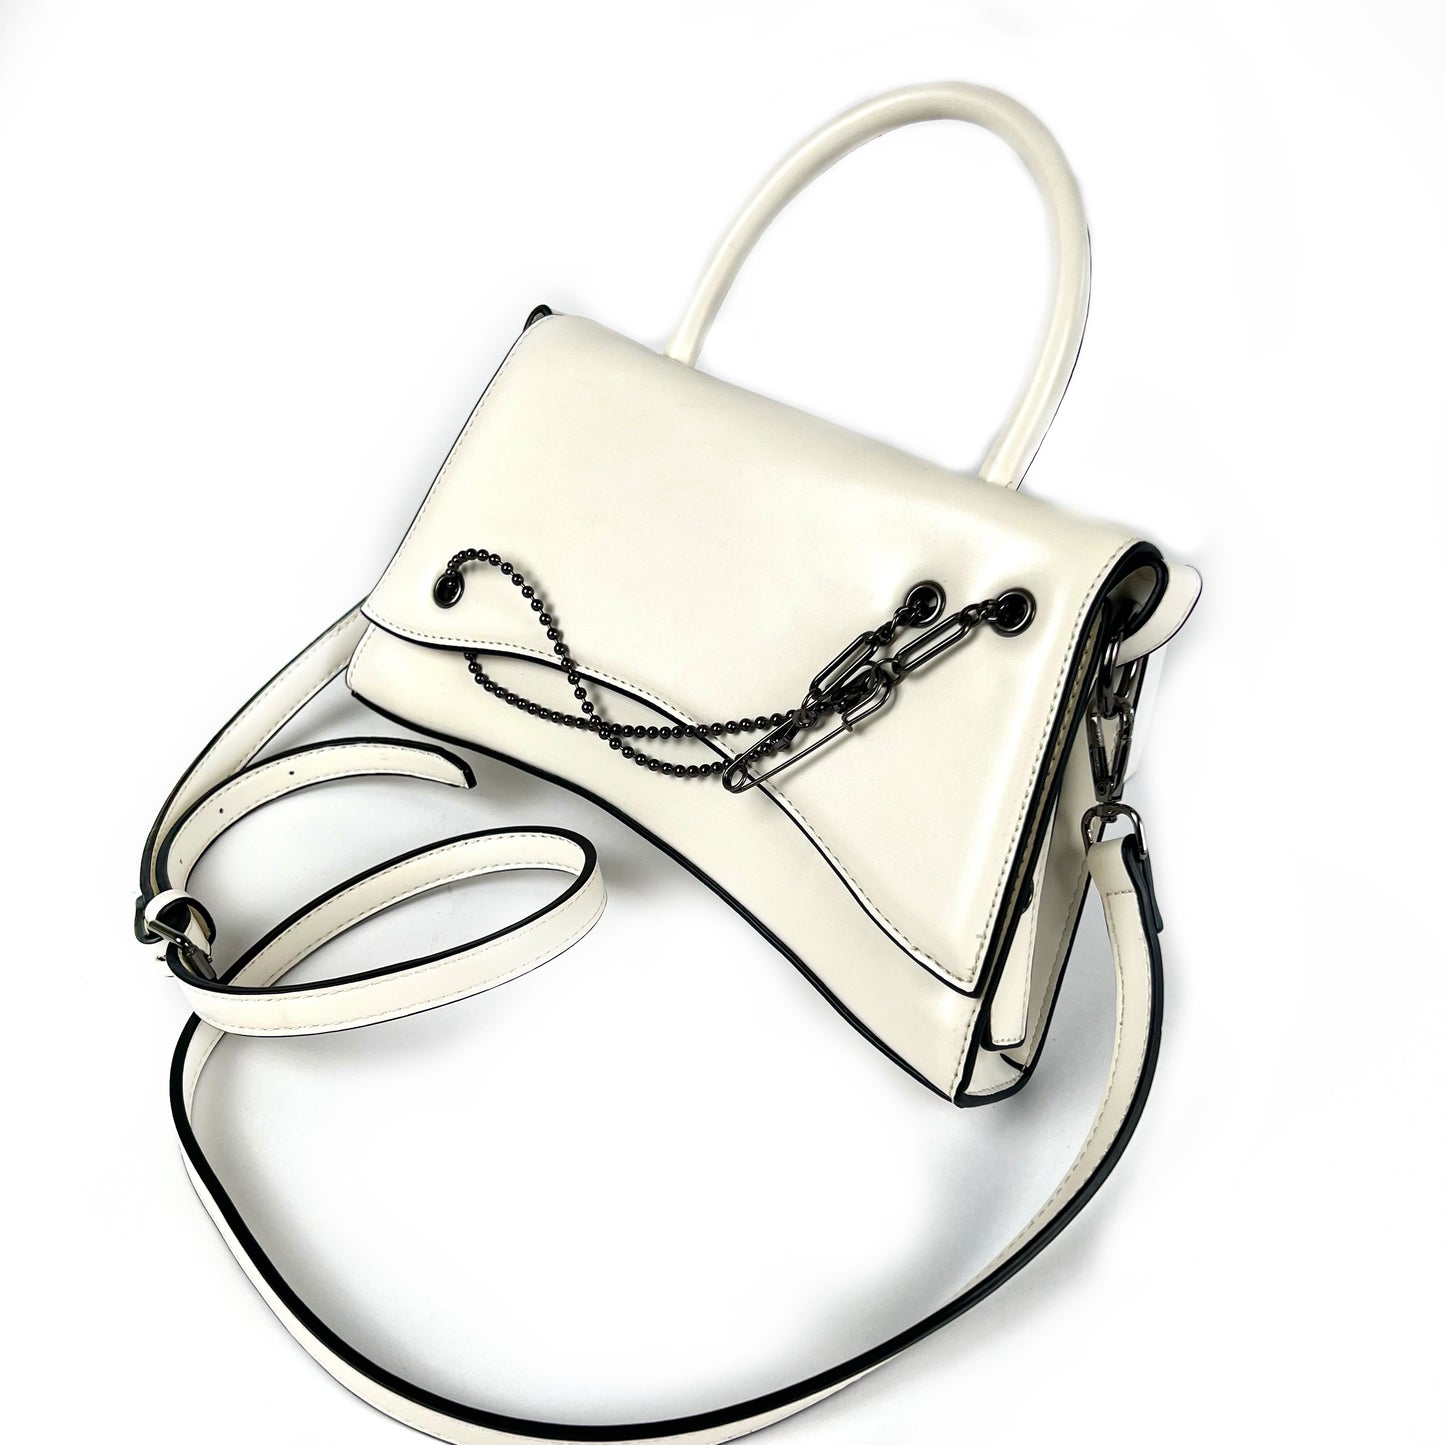 White Ava Crossbody Bag - Little Touch